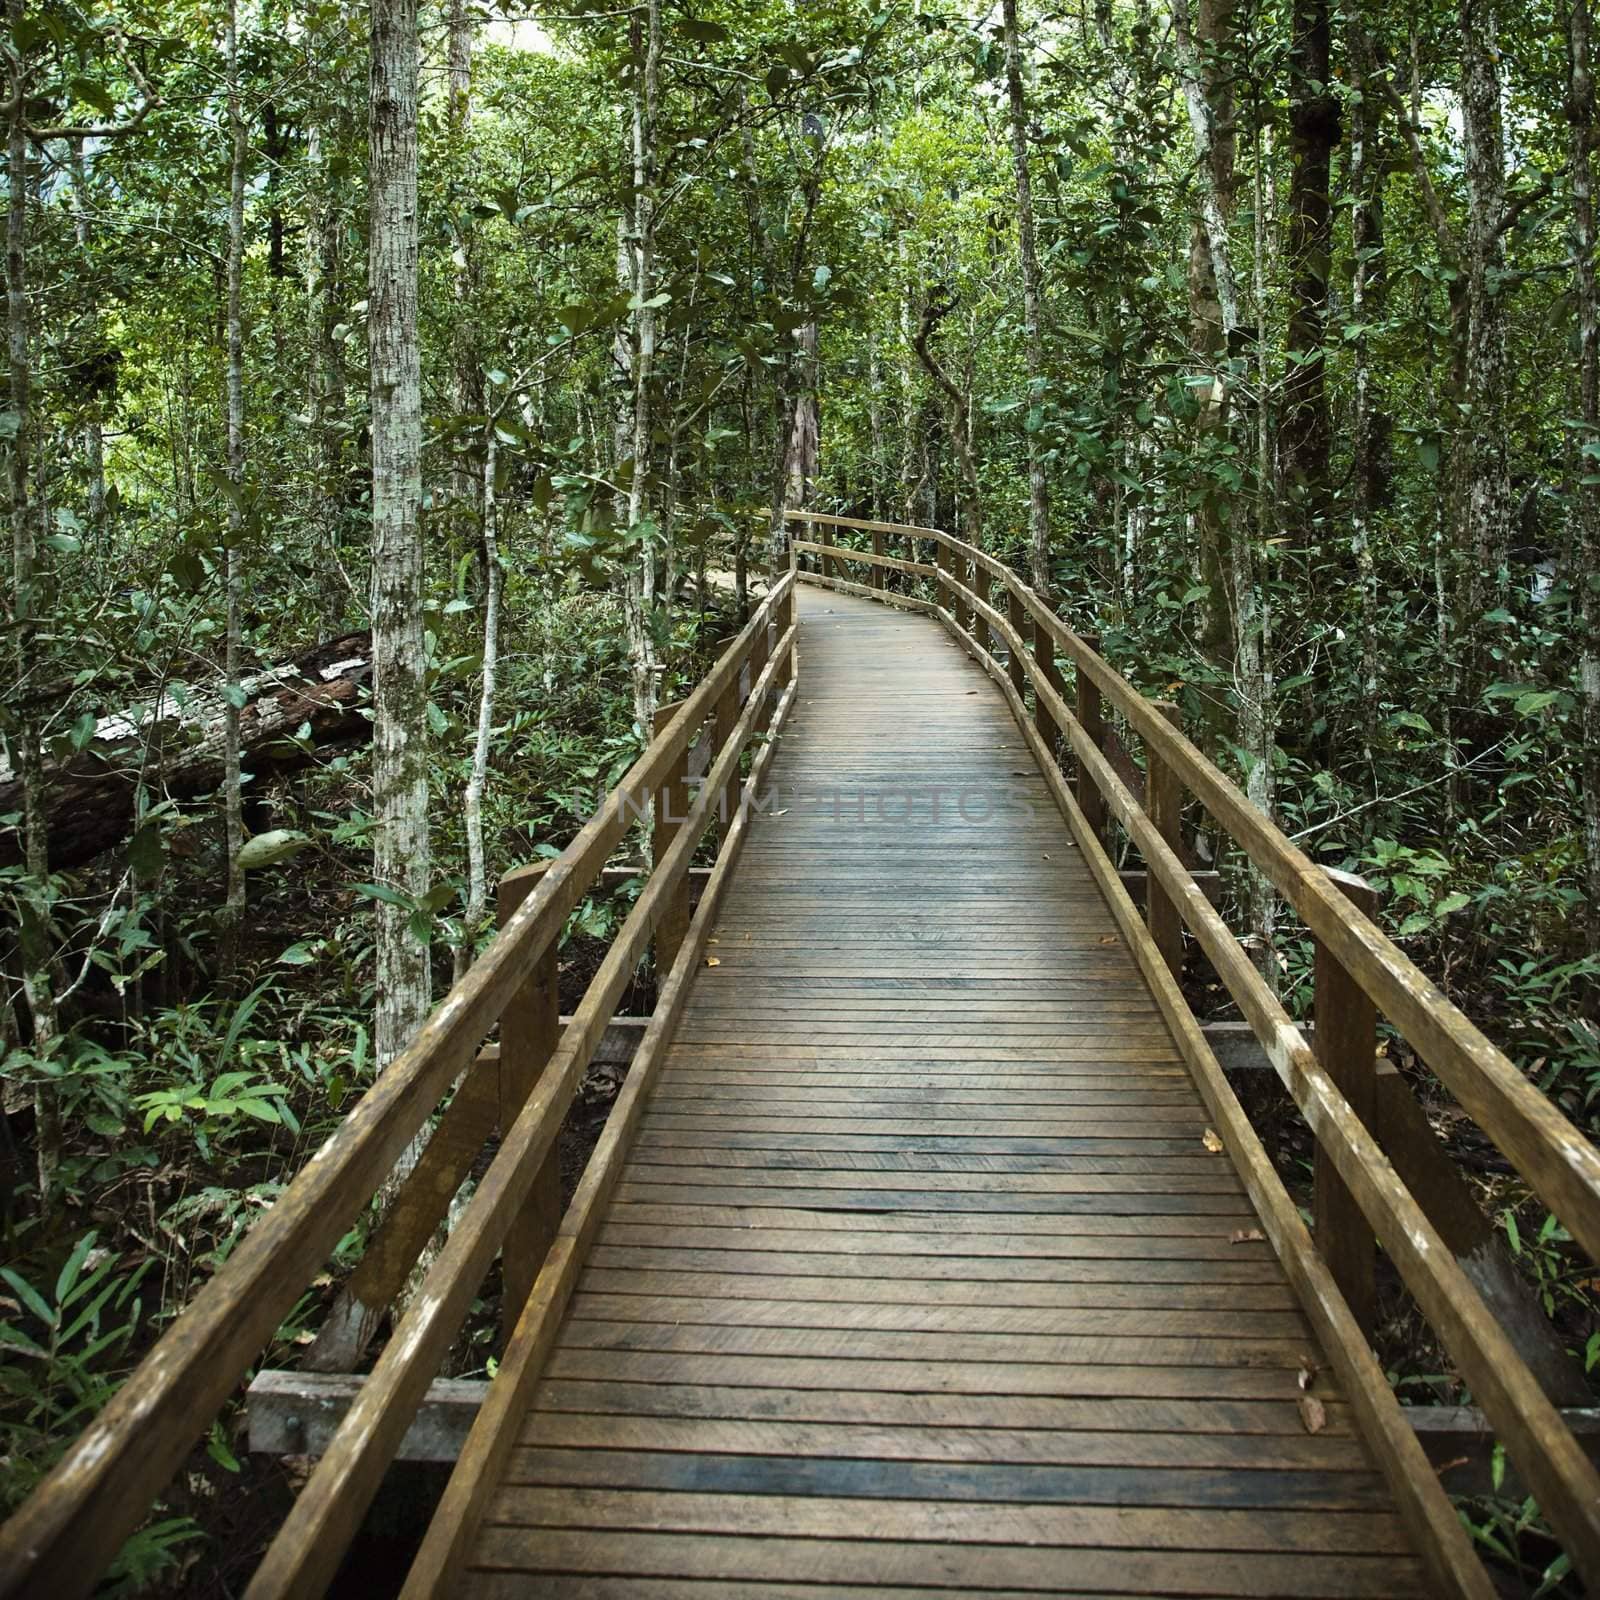 Wooden boardwalk through forest in Daintree Rainforest, Australia.